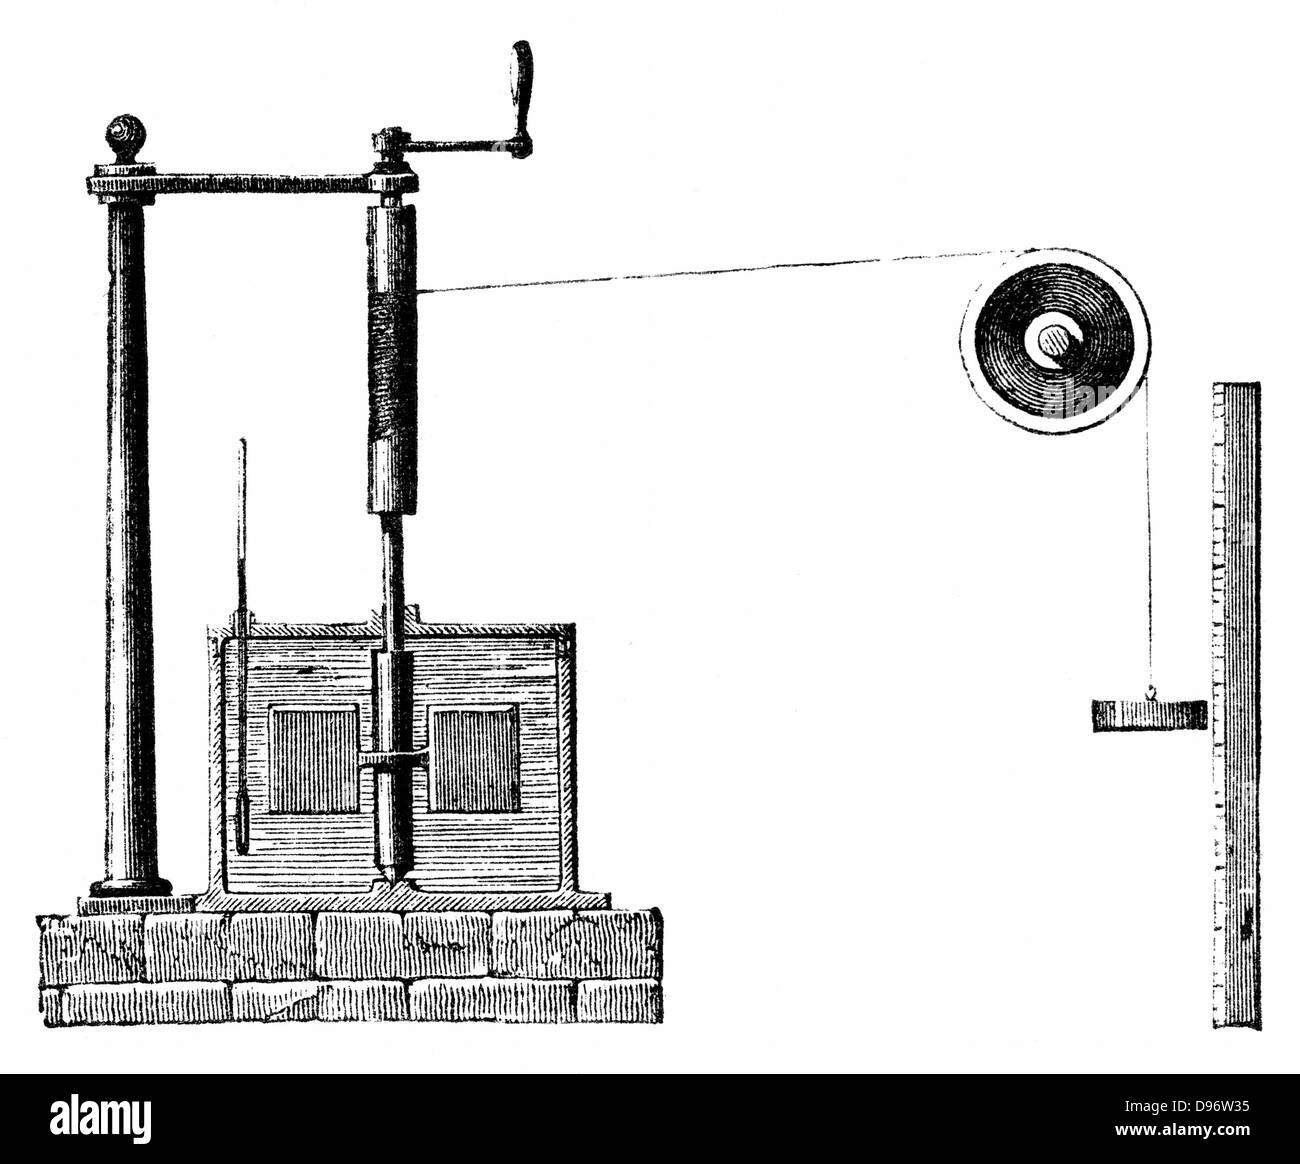 James Prescott Joule (1818-89) apparecchio per determinare equivalente meccanico del calore. Recipiente di acqua, olio o mercurio racchiude palette fissate al mandrino. Cordicella avvolta attorno al cilindro e tamburo. Peso decrescente scala contro la ruota il mandrino e le palette. Alzare e abbassare il peso aumenta la temperatura del fluido. Da un aumento di temperatura e la distanza percorsa energia utilizzata può essere calcolato. Incisione del 1872. Foto Stock